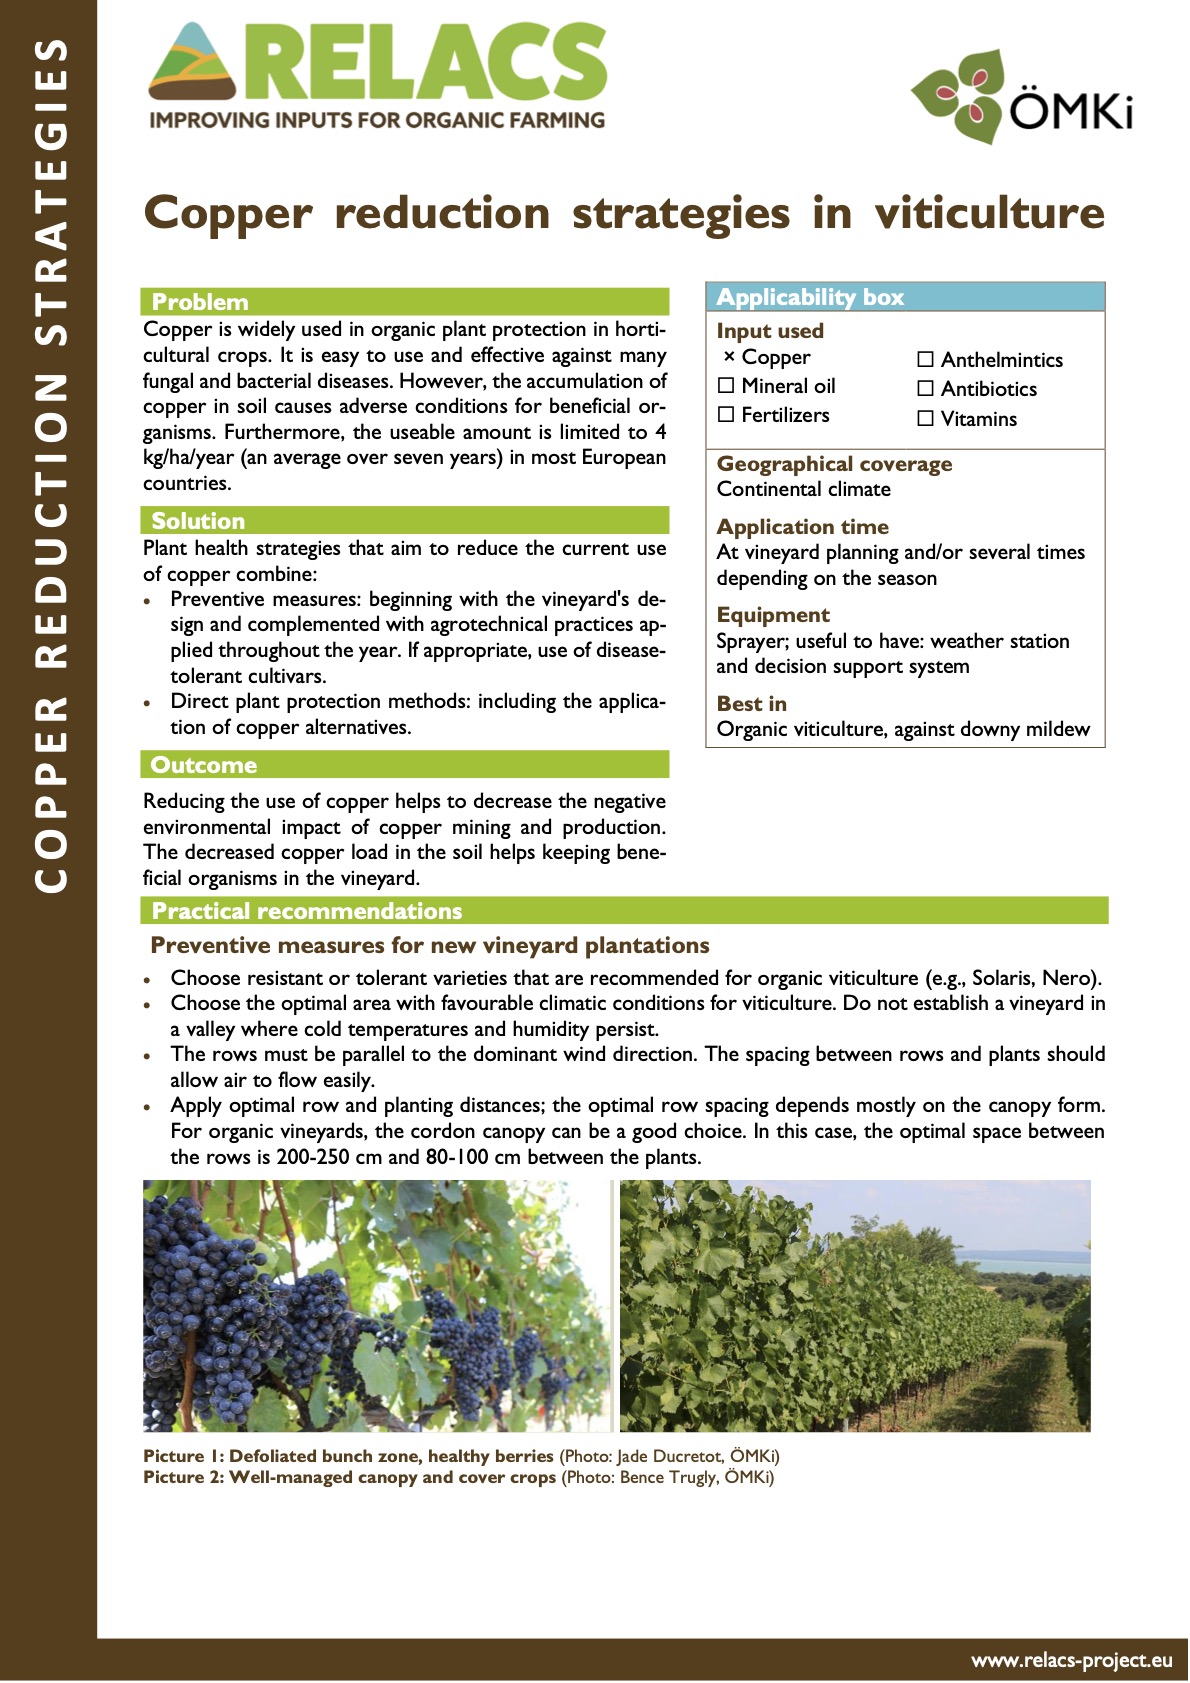 Estrategias de reducción del cobre en viticultura (resumen de práctica de RELACS)